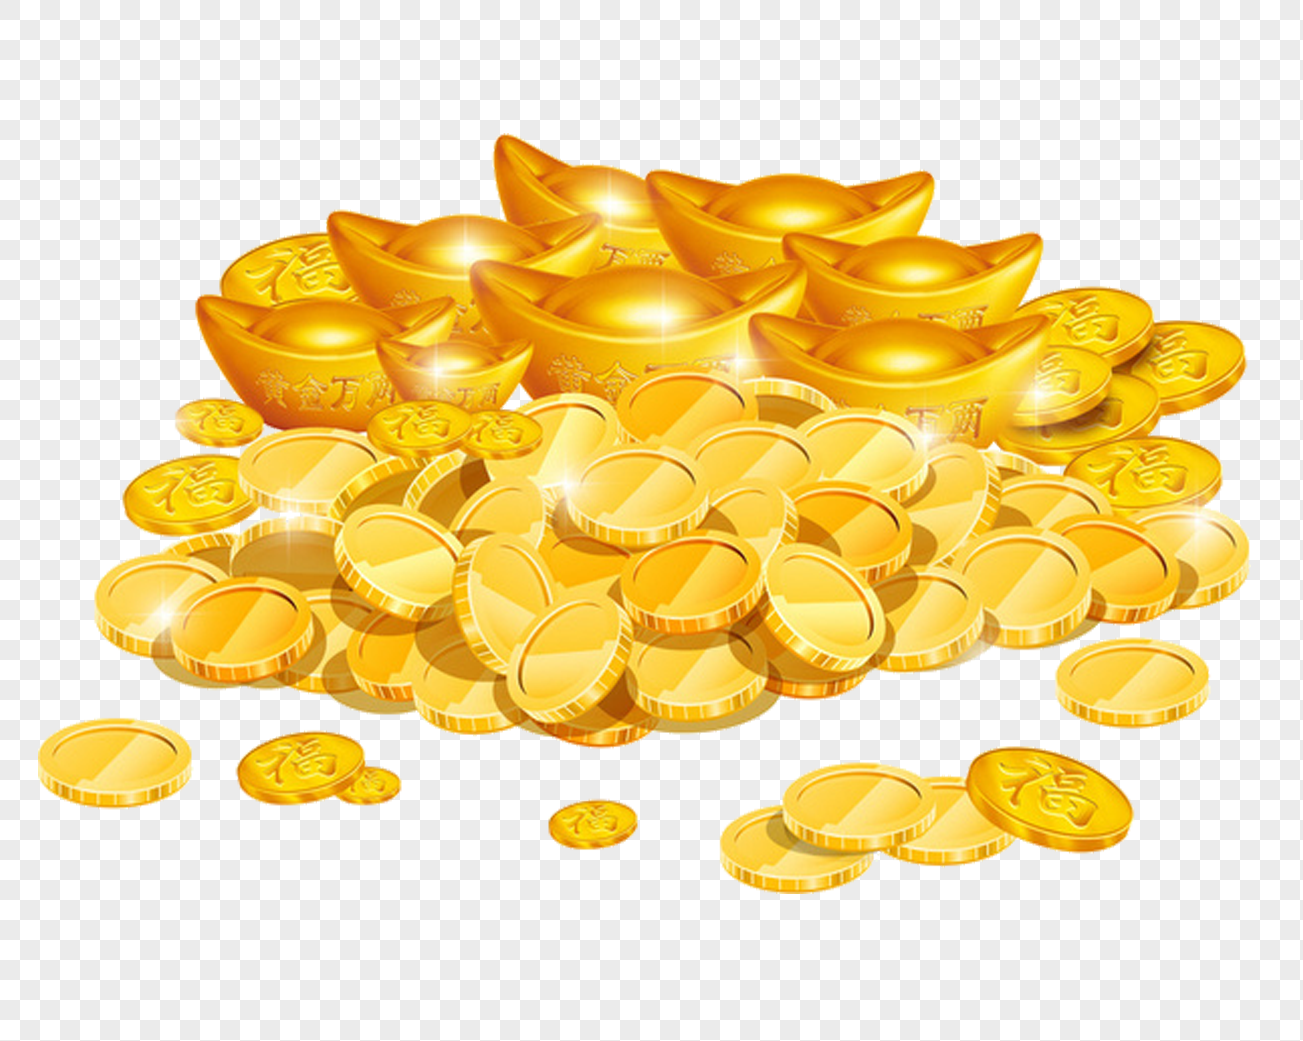 金子 金塊 金幣 兩塊金塊, 一堆金幣, 發光的金子, 一堆發光的金子插畫素材圖案，PSD和PNG圖片免費下載